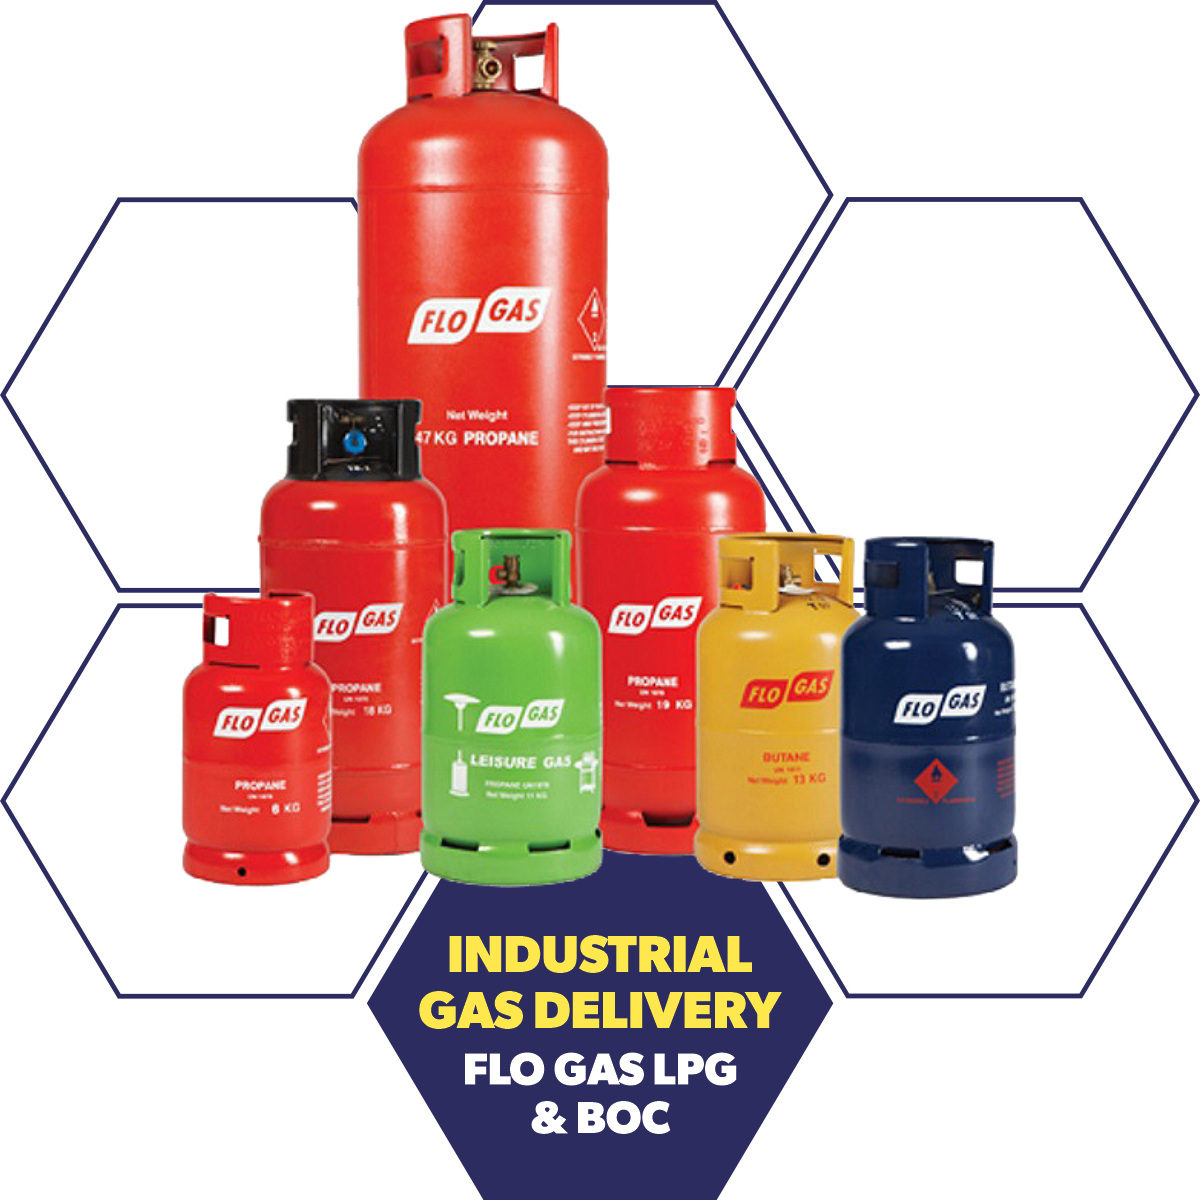 Industrial Gas Delivery - Flo Gas LPG & BOC